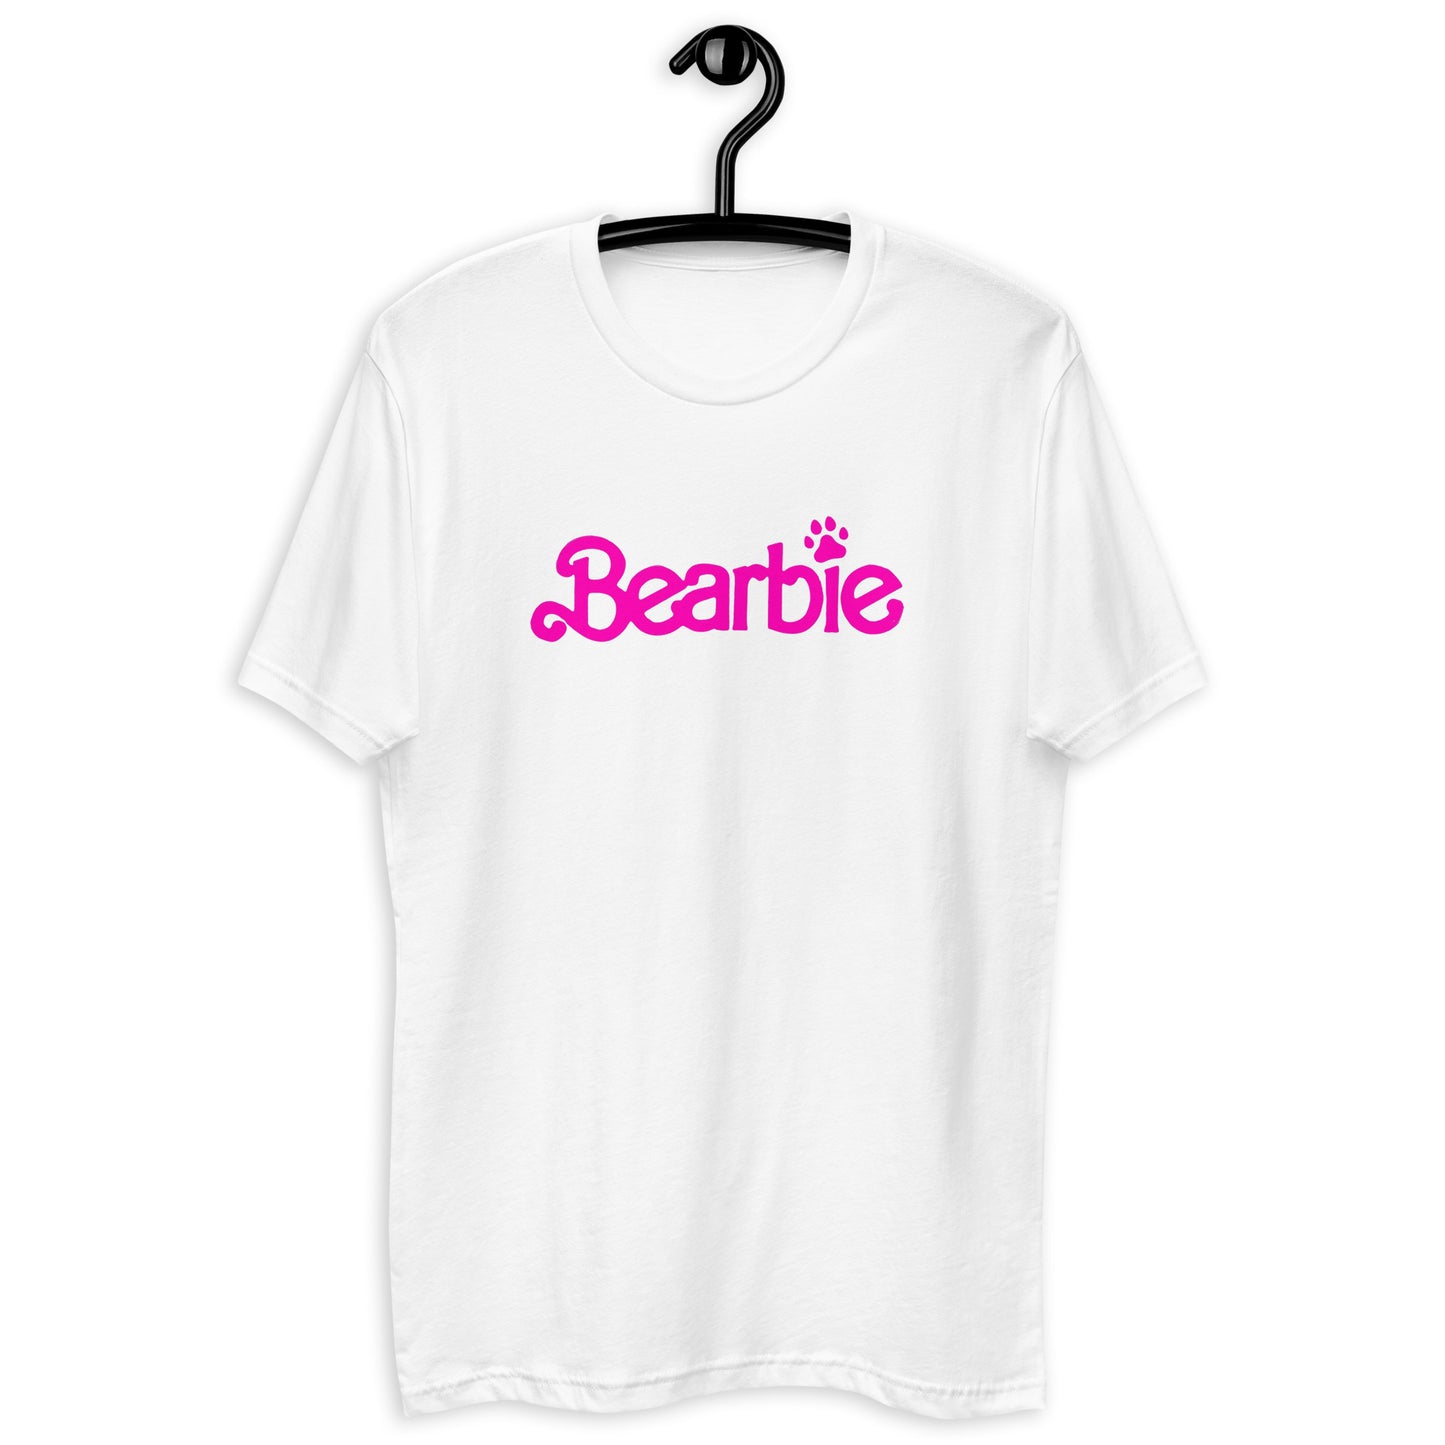 BEARBIE Short Sleeve T-shirt